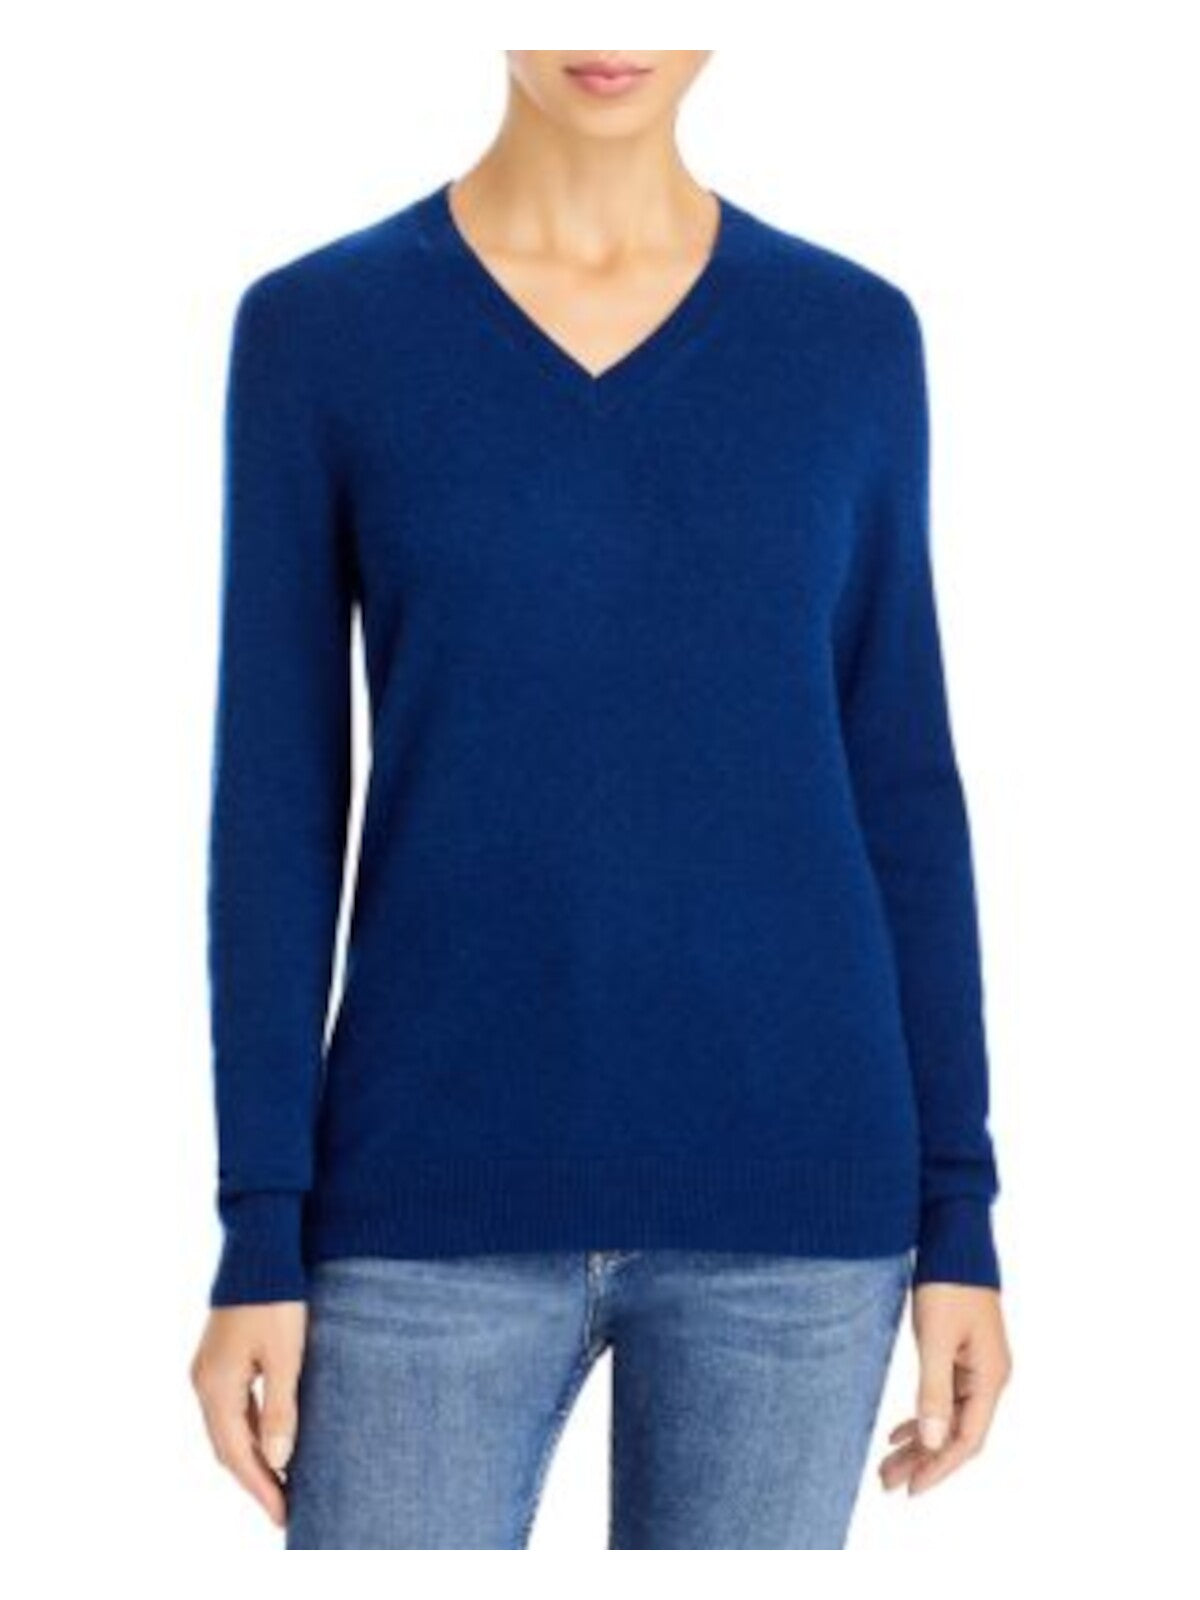 Designer Brand Womens Navy Long Sleeve V Neck Sweater XS